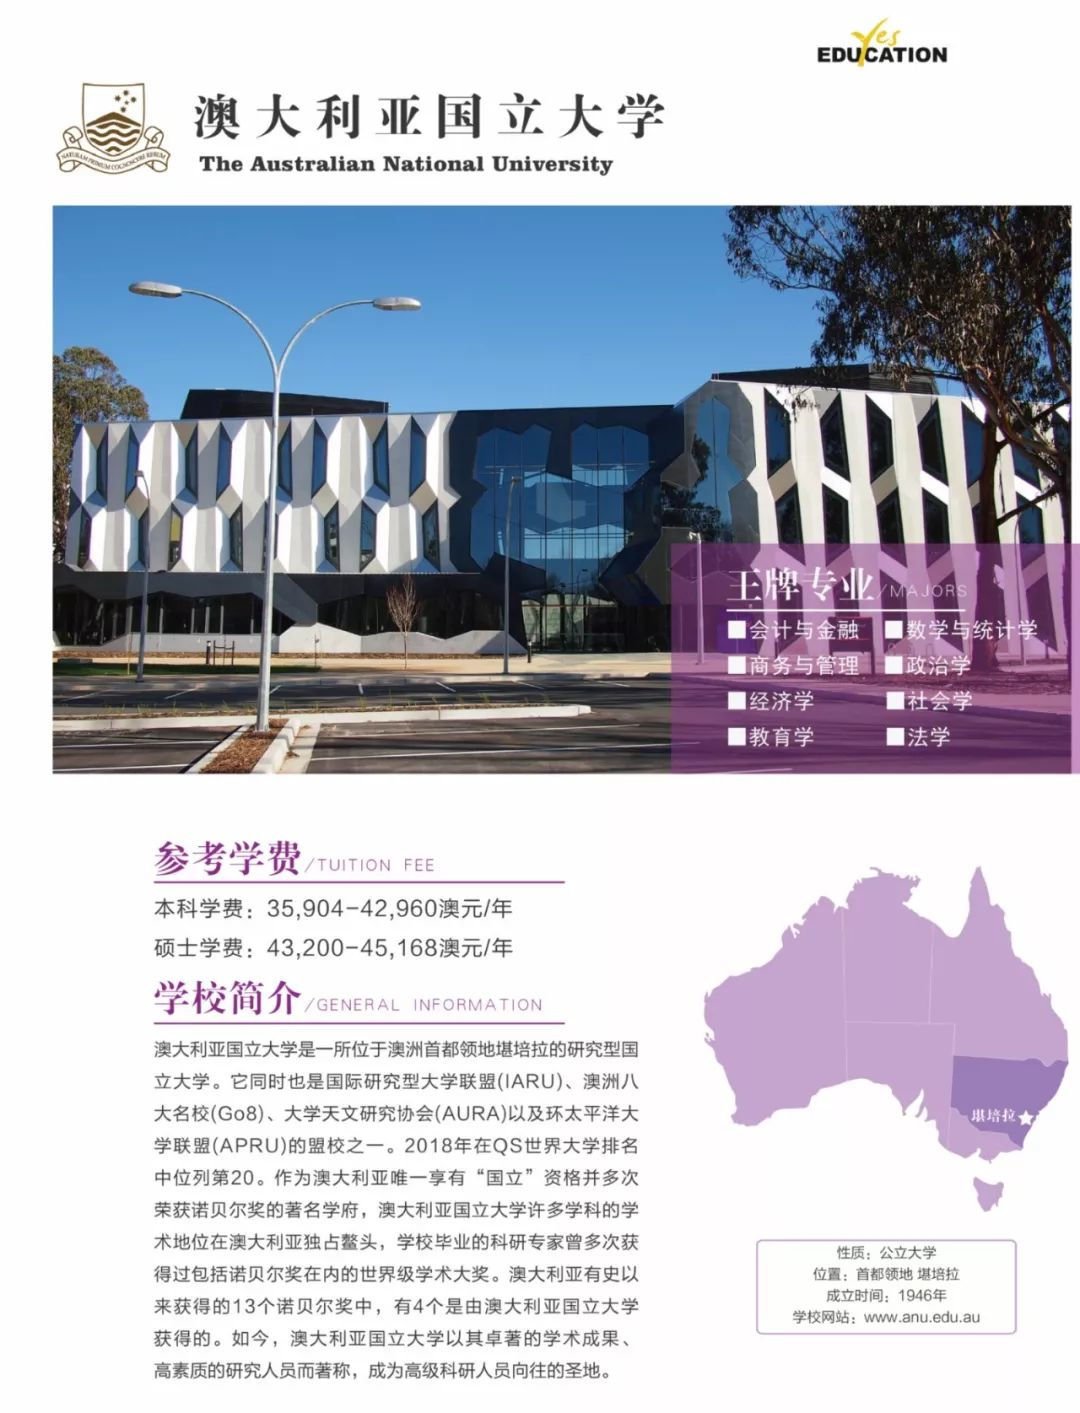 澳大利亚国立大学坎布里校园公共空间-lahznimmo architects, Aspect Studios，BVN Architecture ...